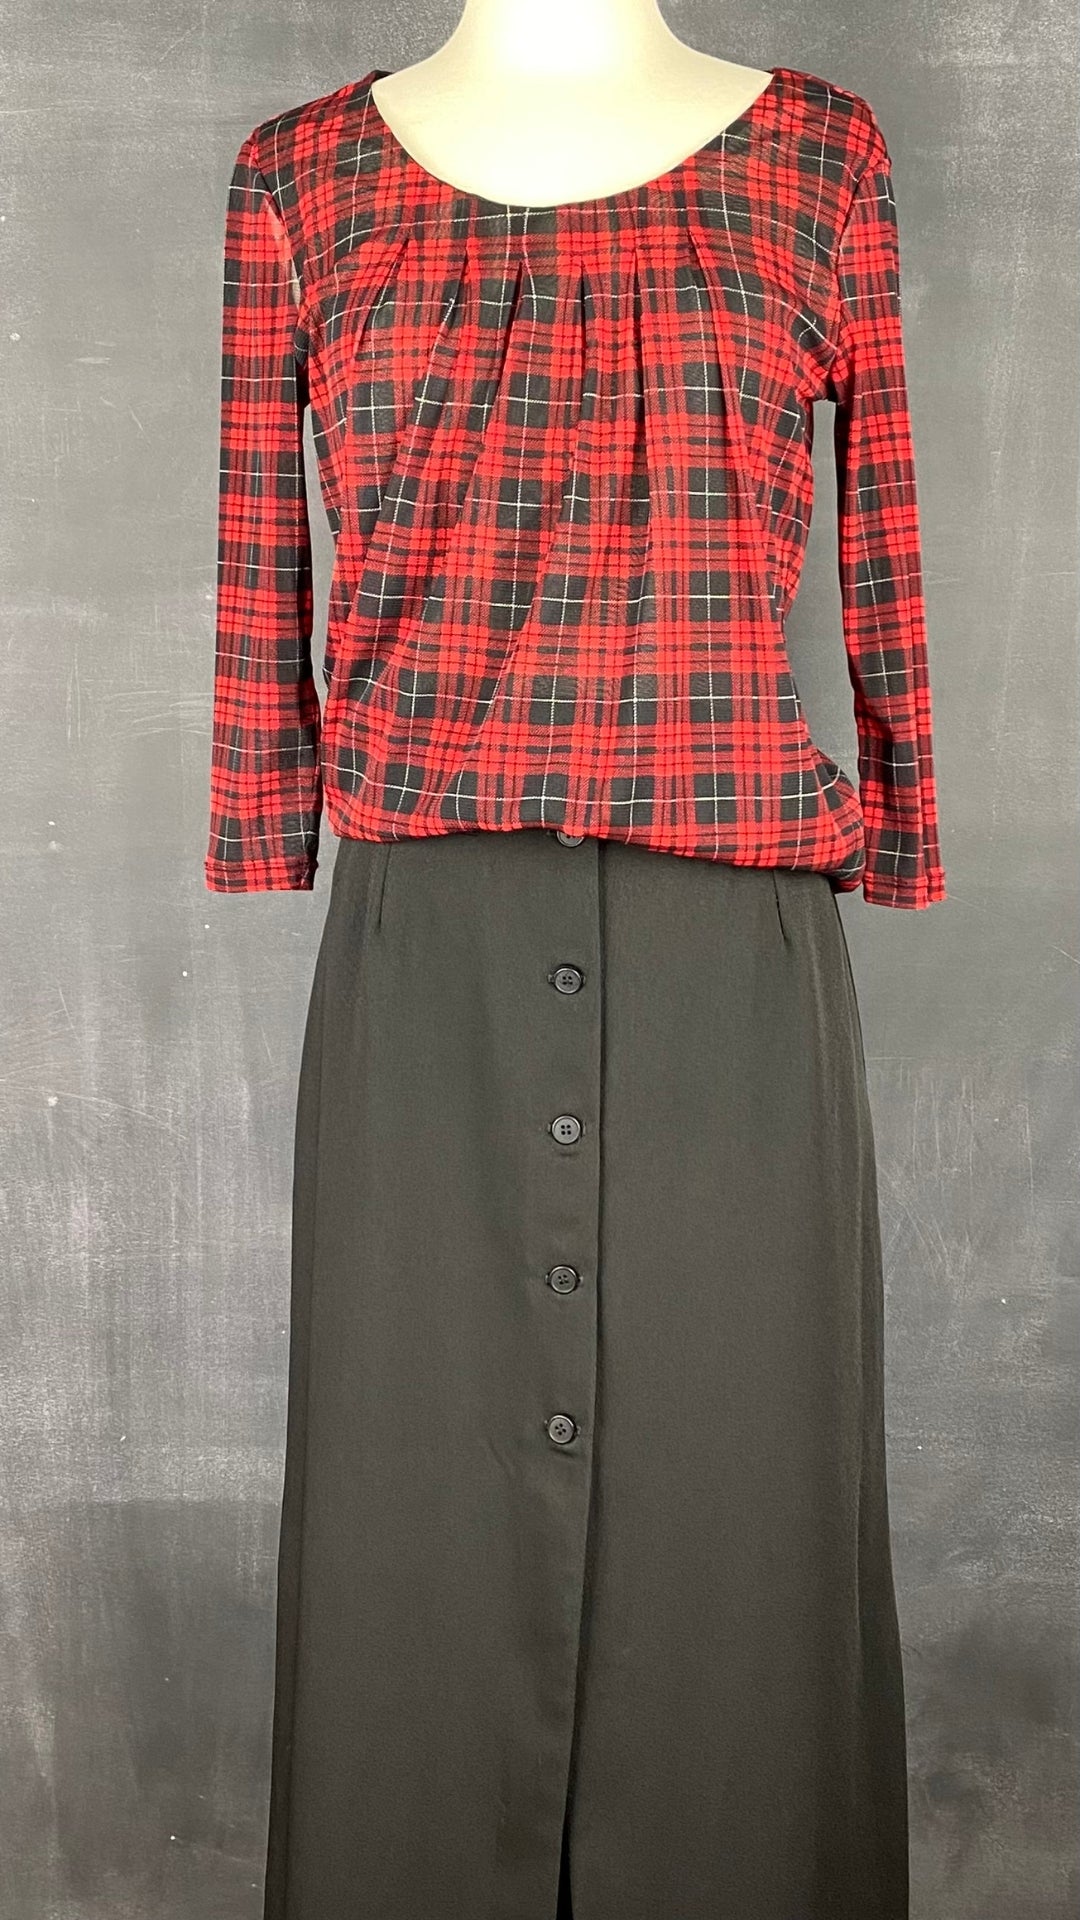 Blouse légère tartan festif S. Oliver, taille 34 (xs-s). Vue de l'agencement avec la jupe vintage Jacob.